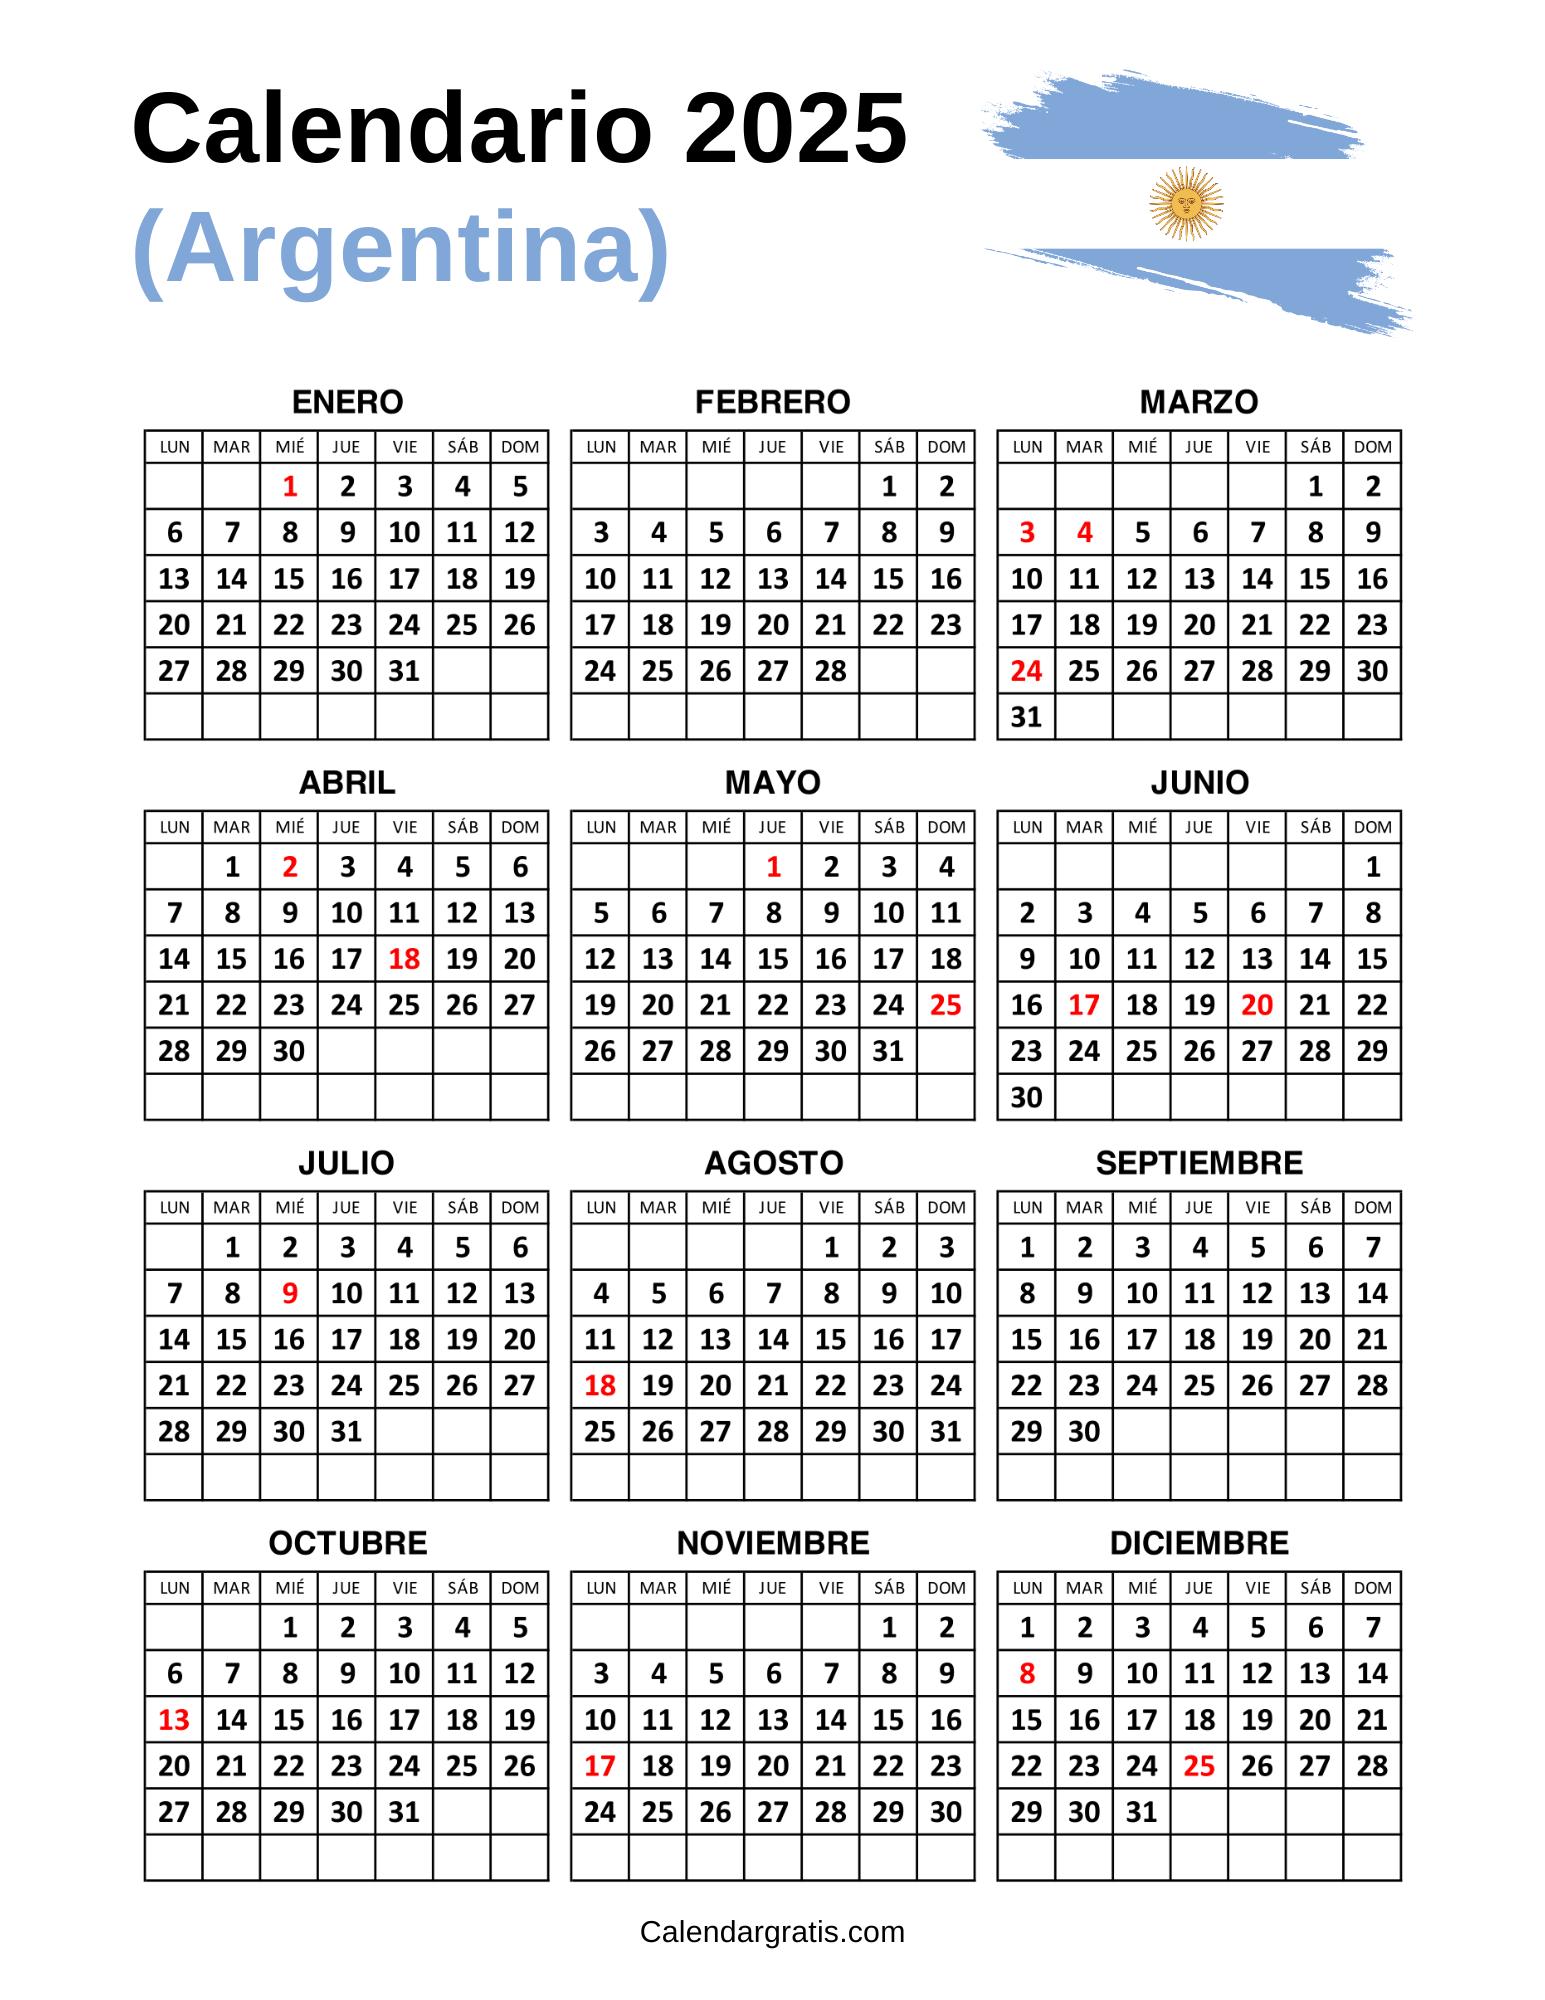 Calendario Argentina 2025 para imprimir